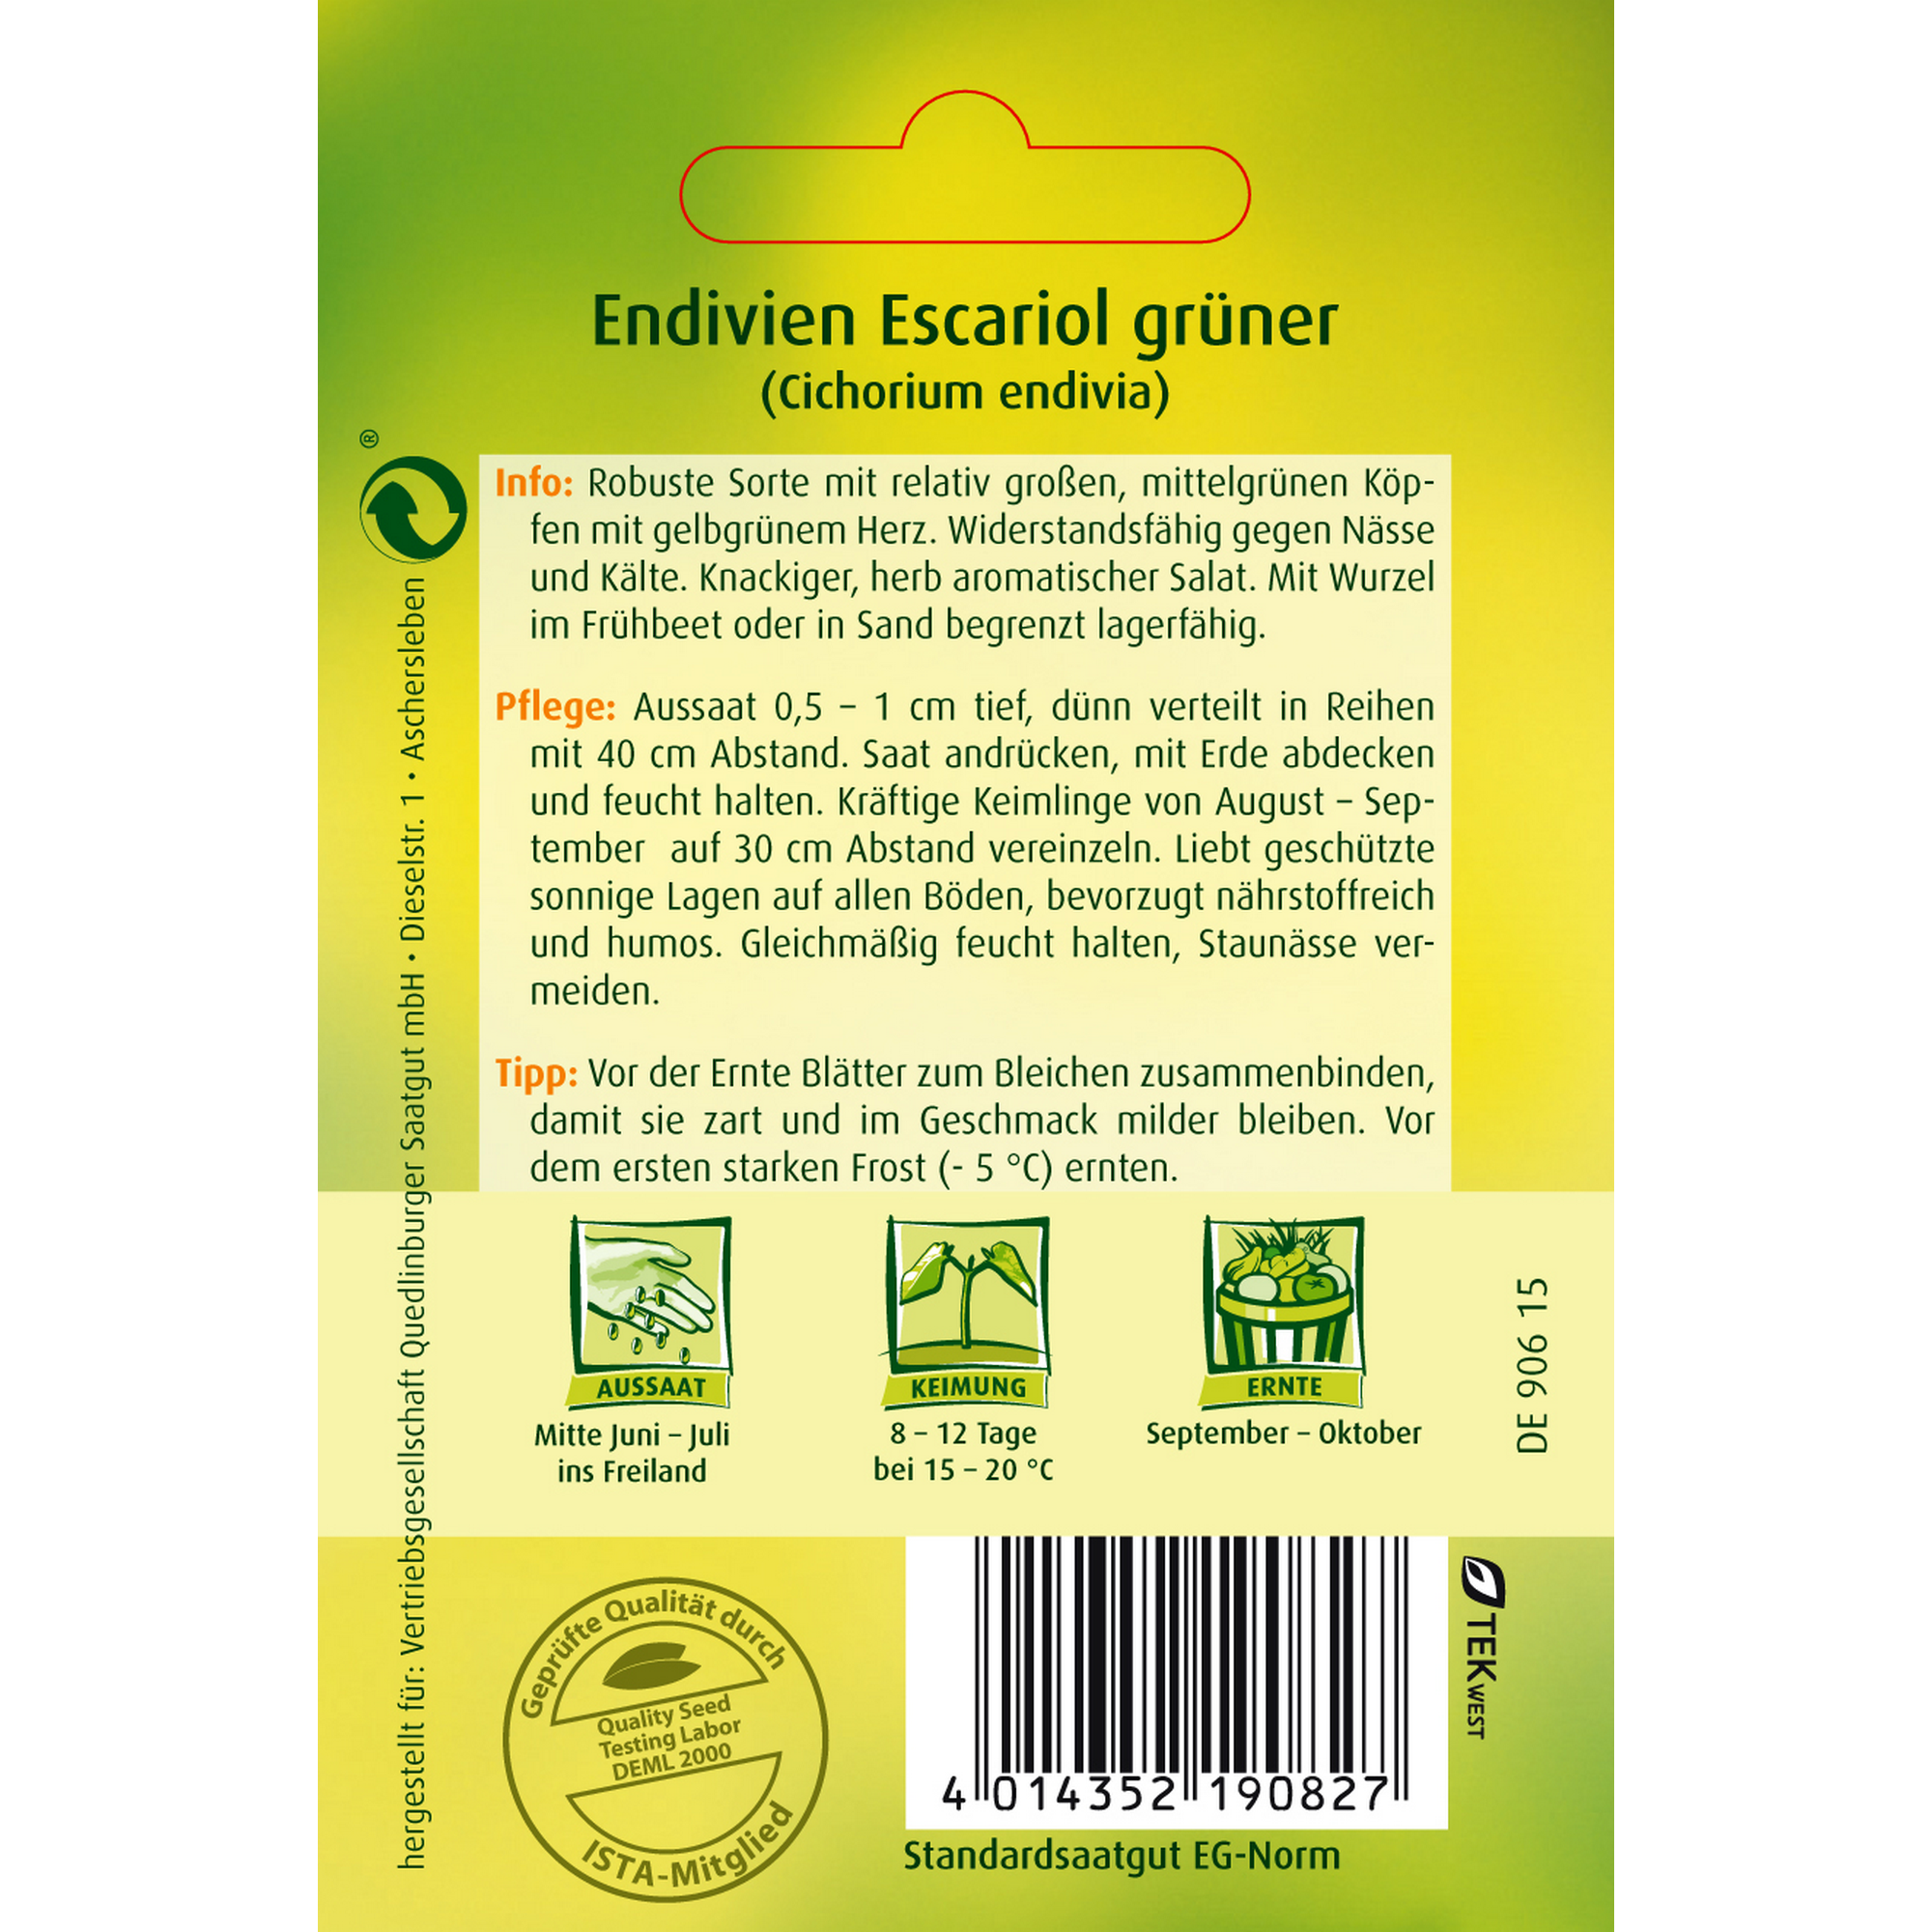 Endivie 'Escariol grüner' + product picture